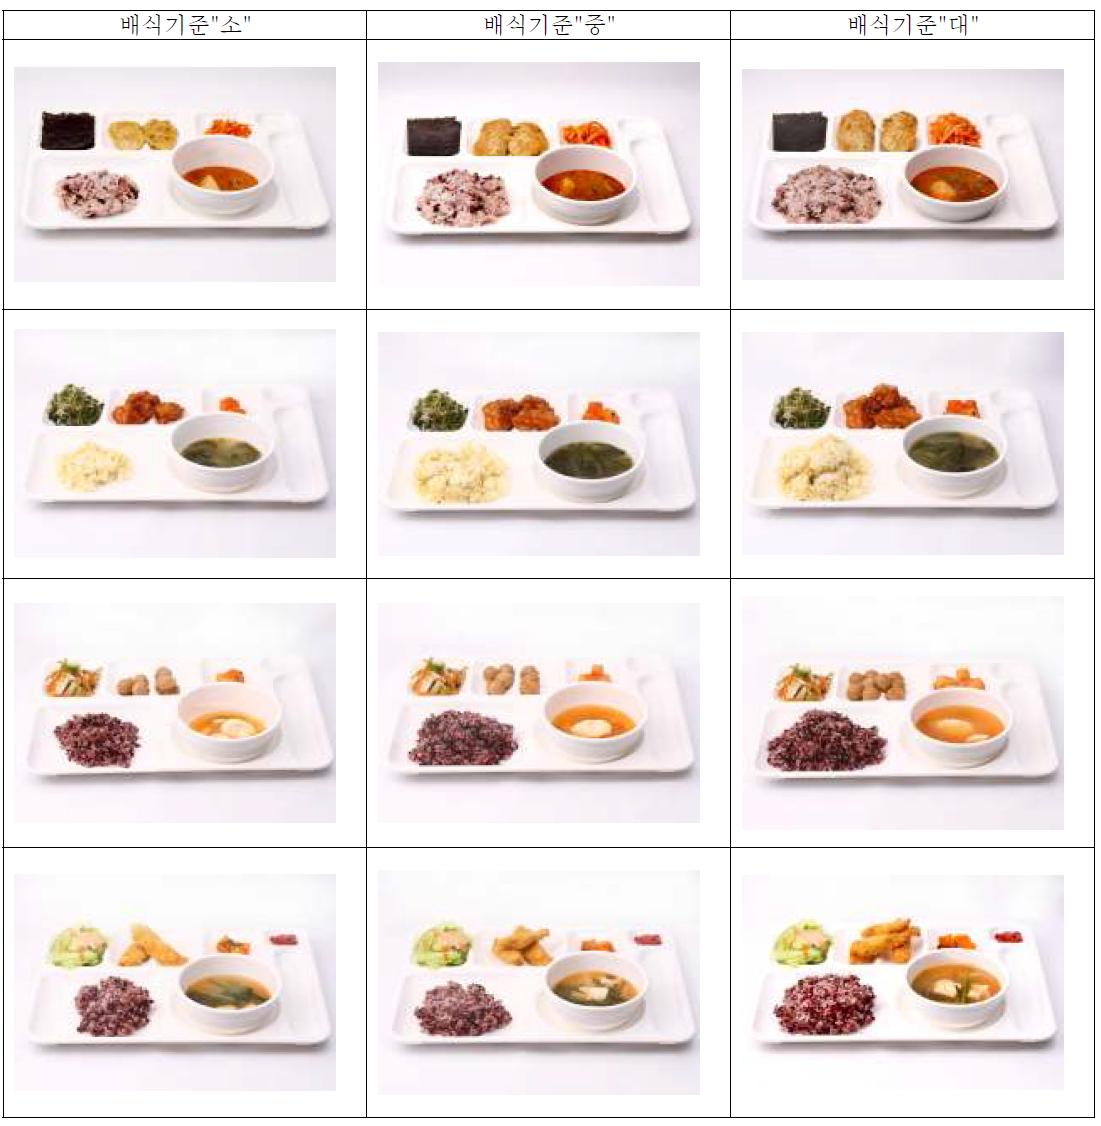 배식기준별 배식량 사진(Selected examples of serving portion by serving size)